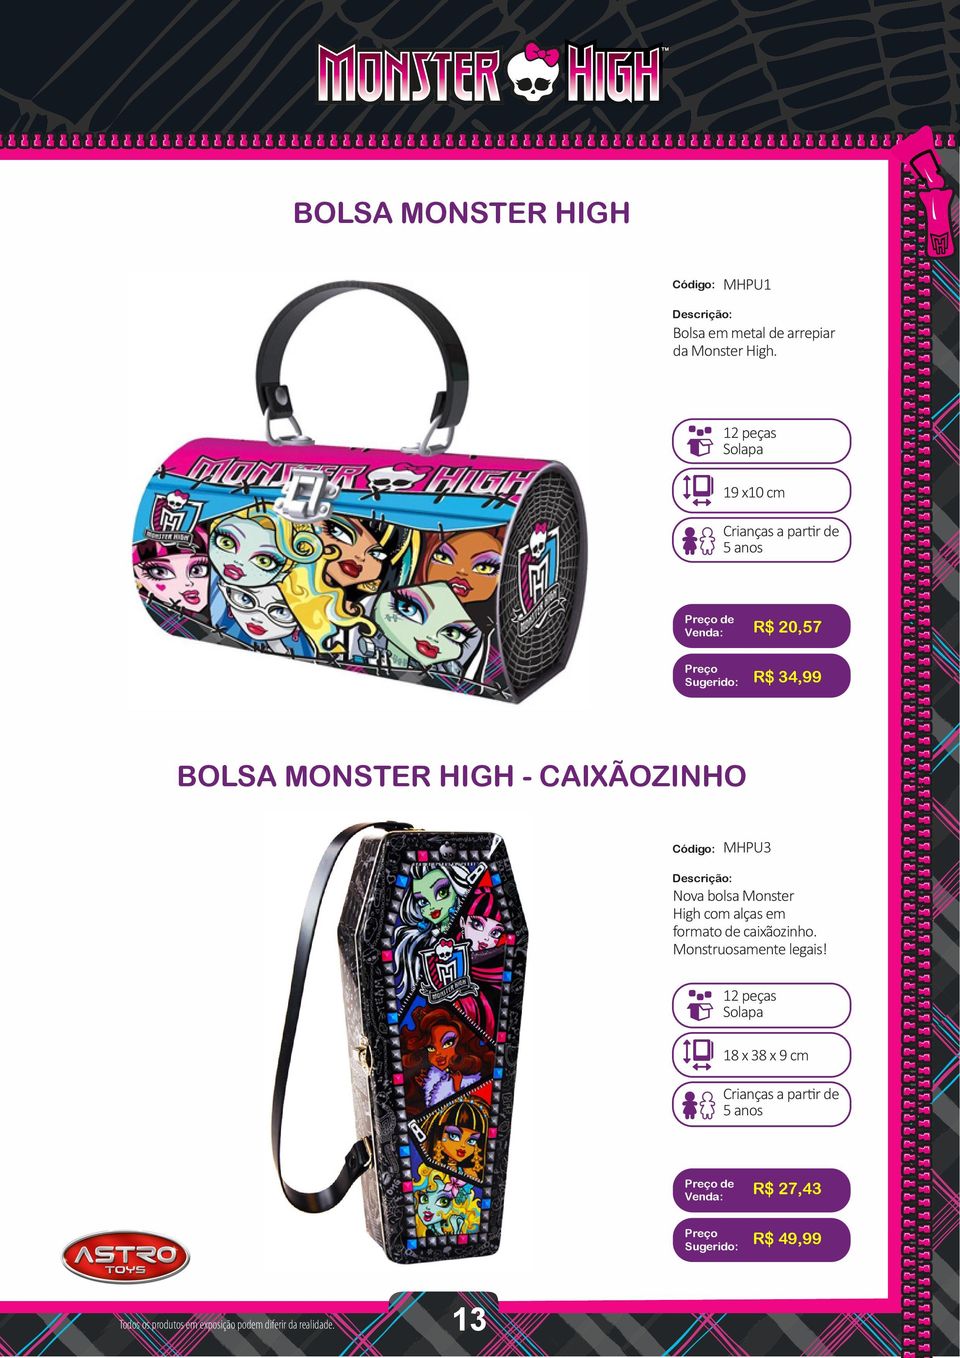 CAIXÃOZINHO MHPU3 Nova bolsa Monster High com alças em formato de